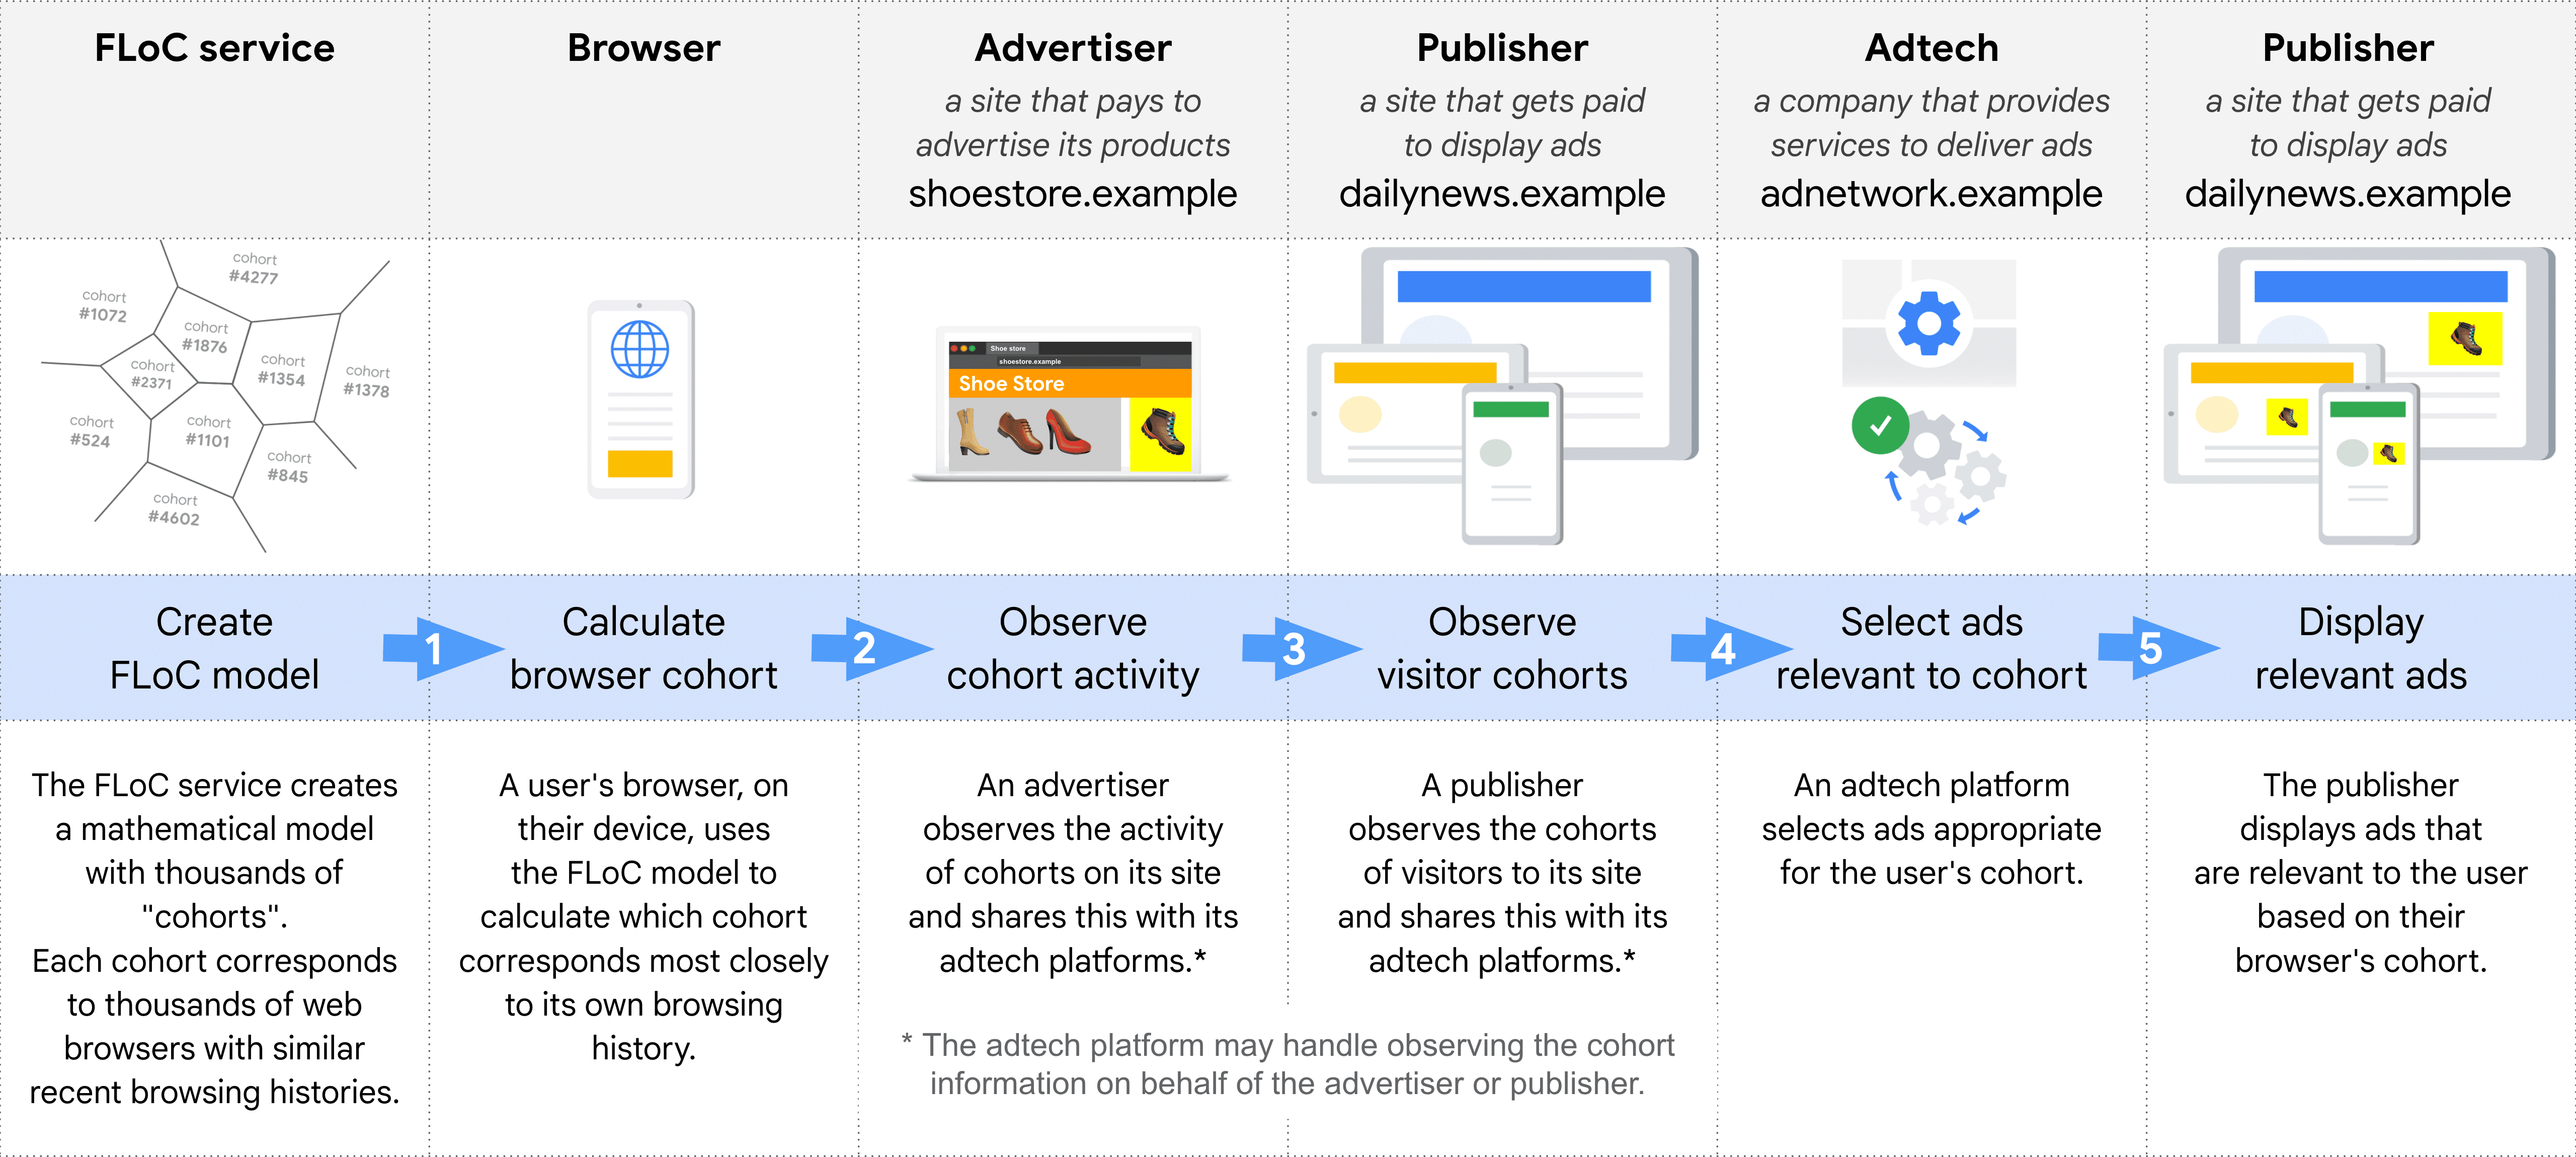 Sơ đồ cho thấy các vai trò theo từng bước trong việc chọn và phân phối một quảng cáo phù hợp bằng cách dùng FLoC: dịch vụ FLoC, Trình duyệt, Nhà quảng cáo, Nhà xuất bản (để quan sát nhóm thuần tập), Công nghệ quảng cáo, Nhà xuất bản (để hiển thị quảng cáo)